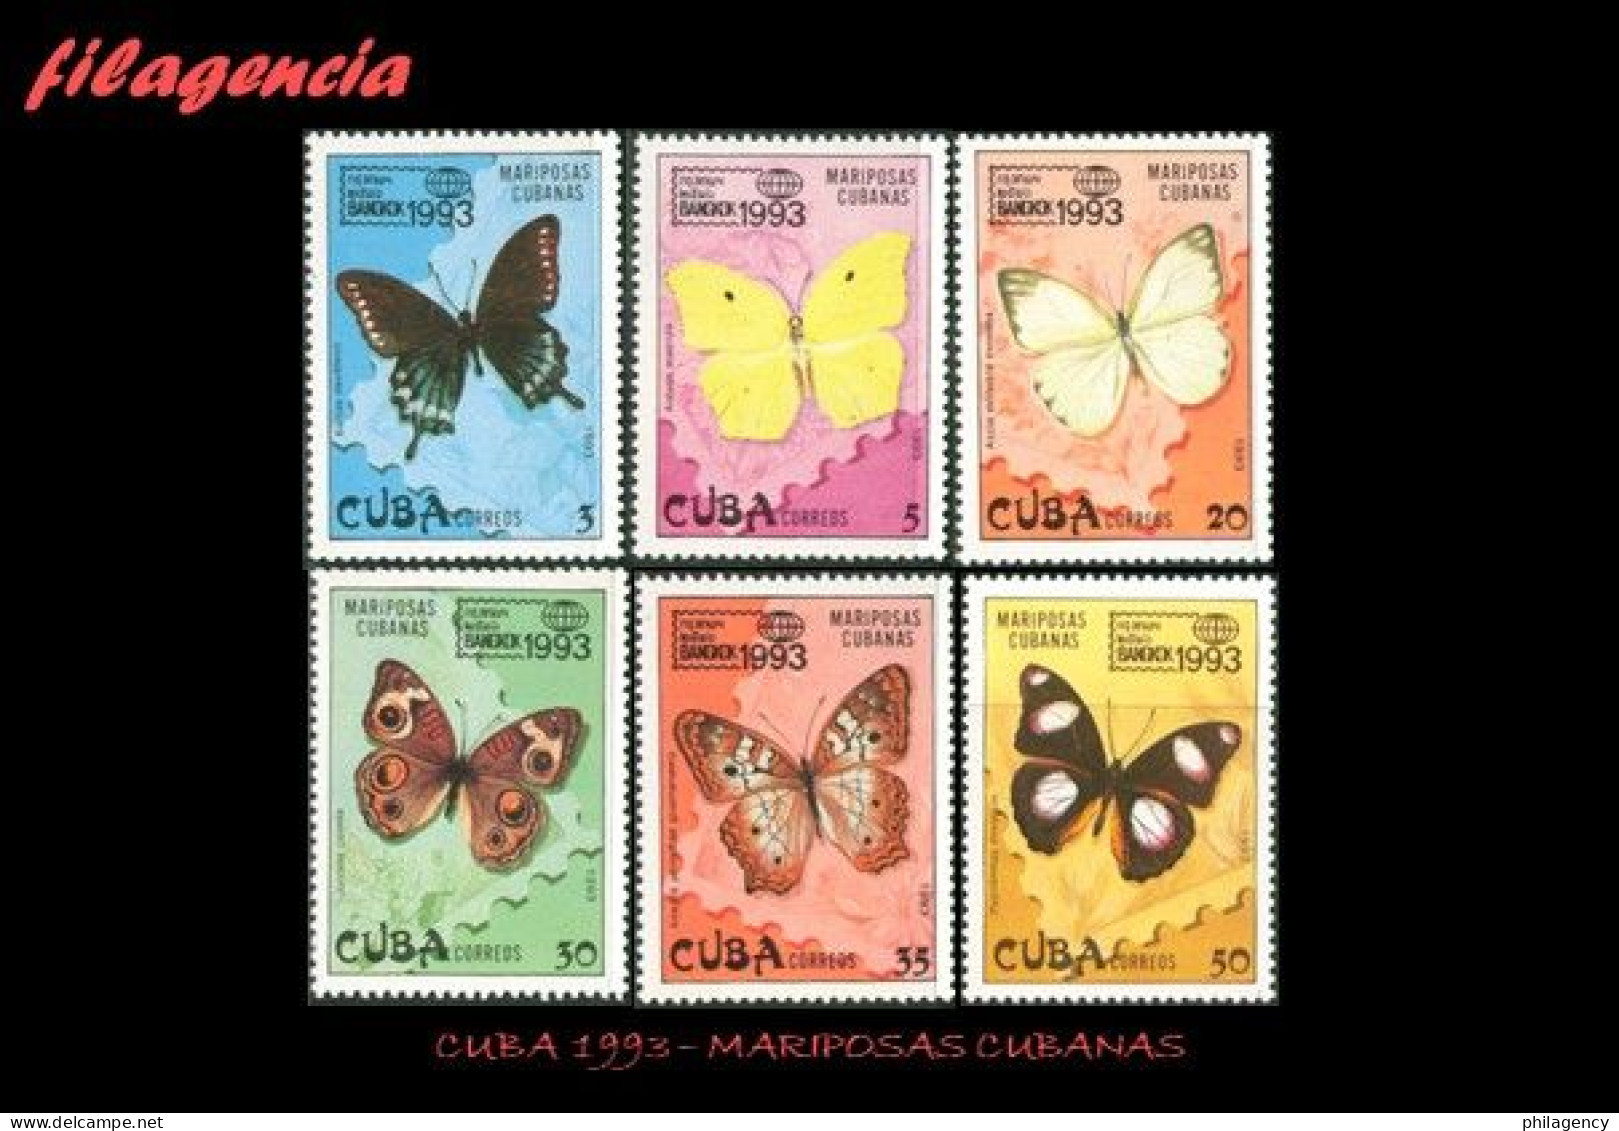 CUBA MINT. 1993-10 MARIPOSAS CUBANAS - Ongebruikt